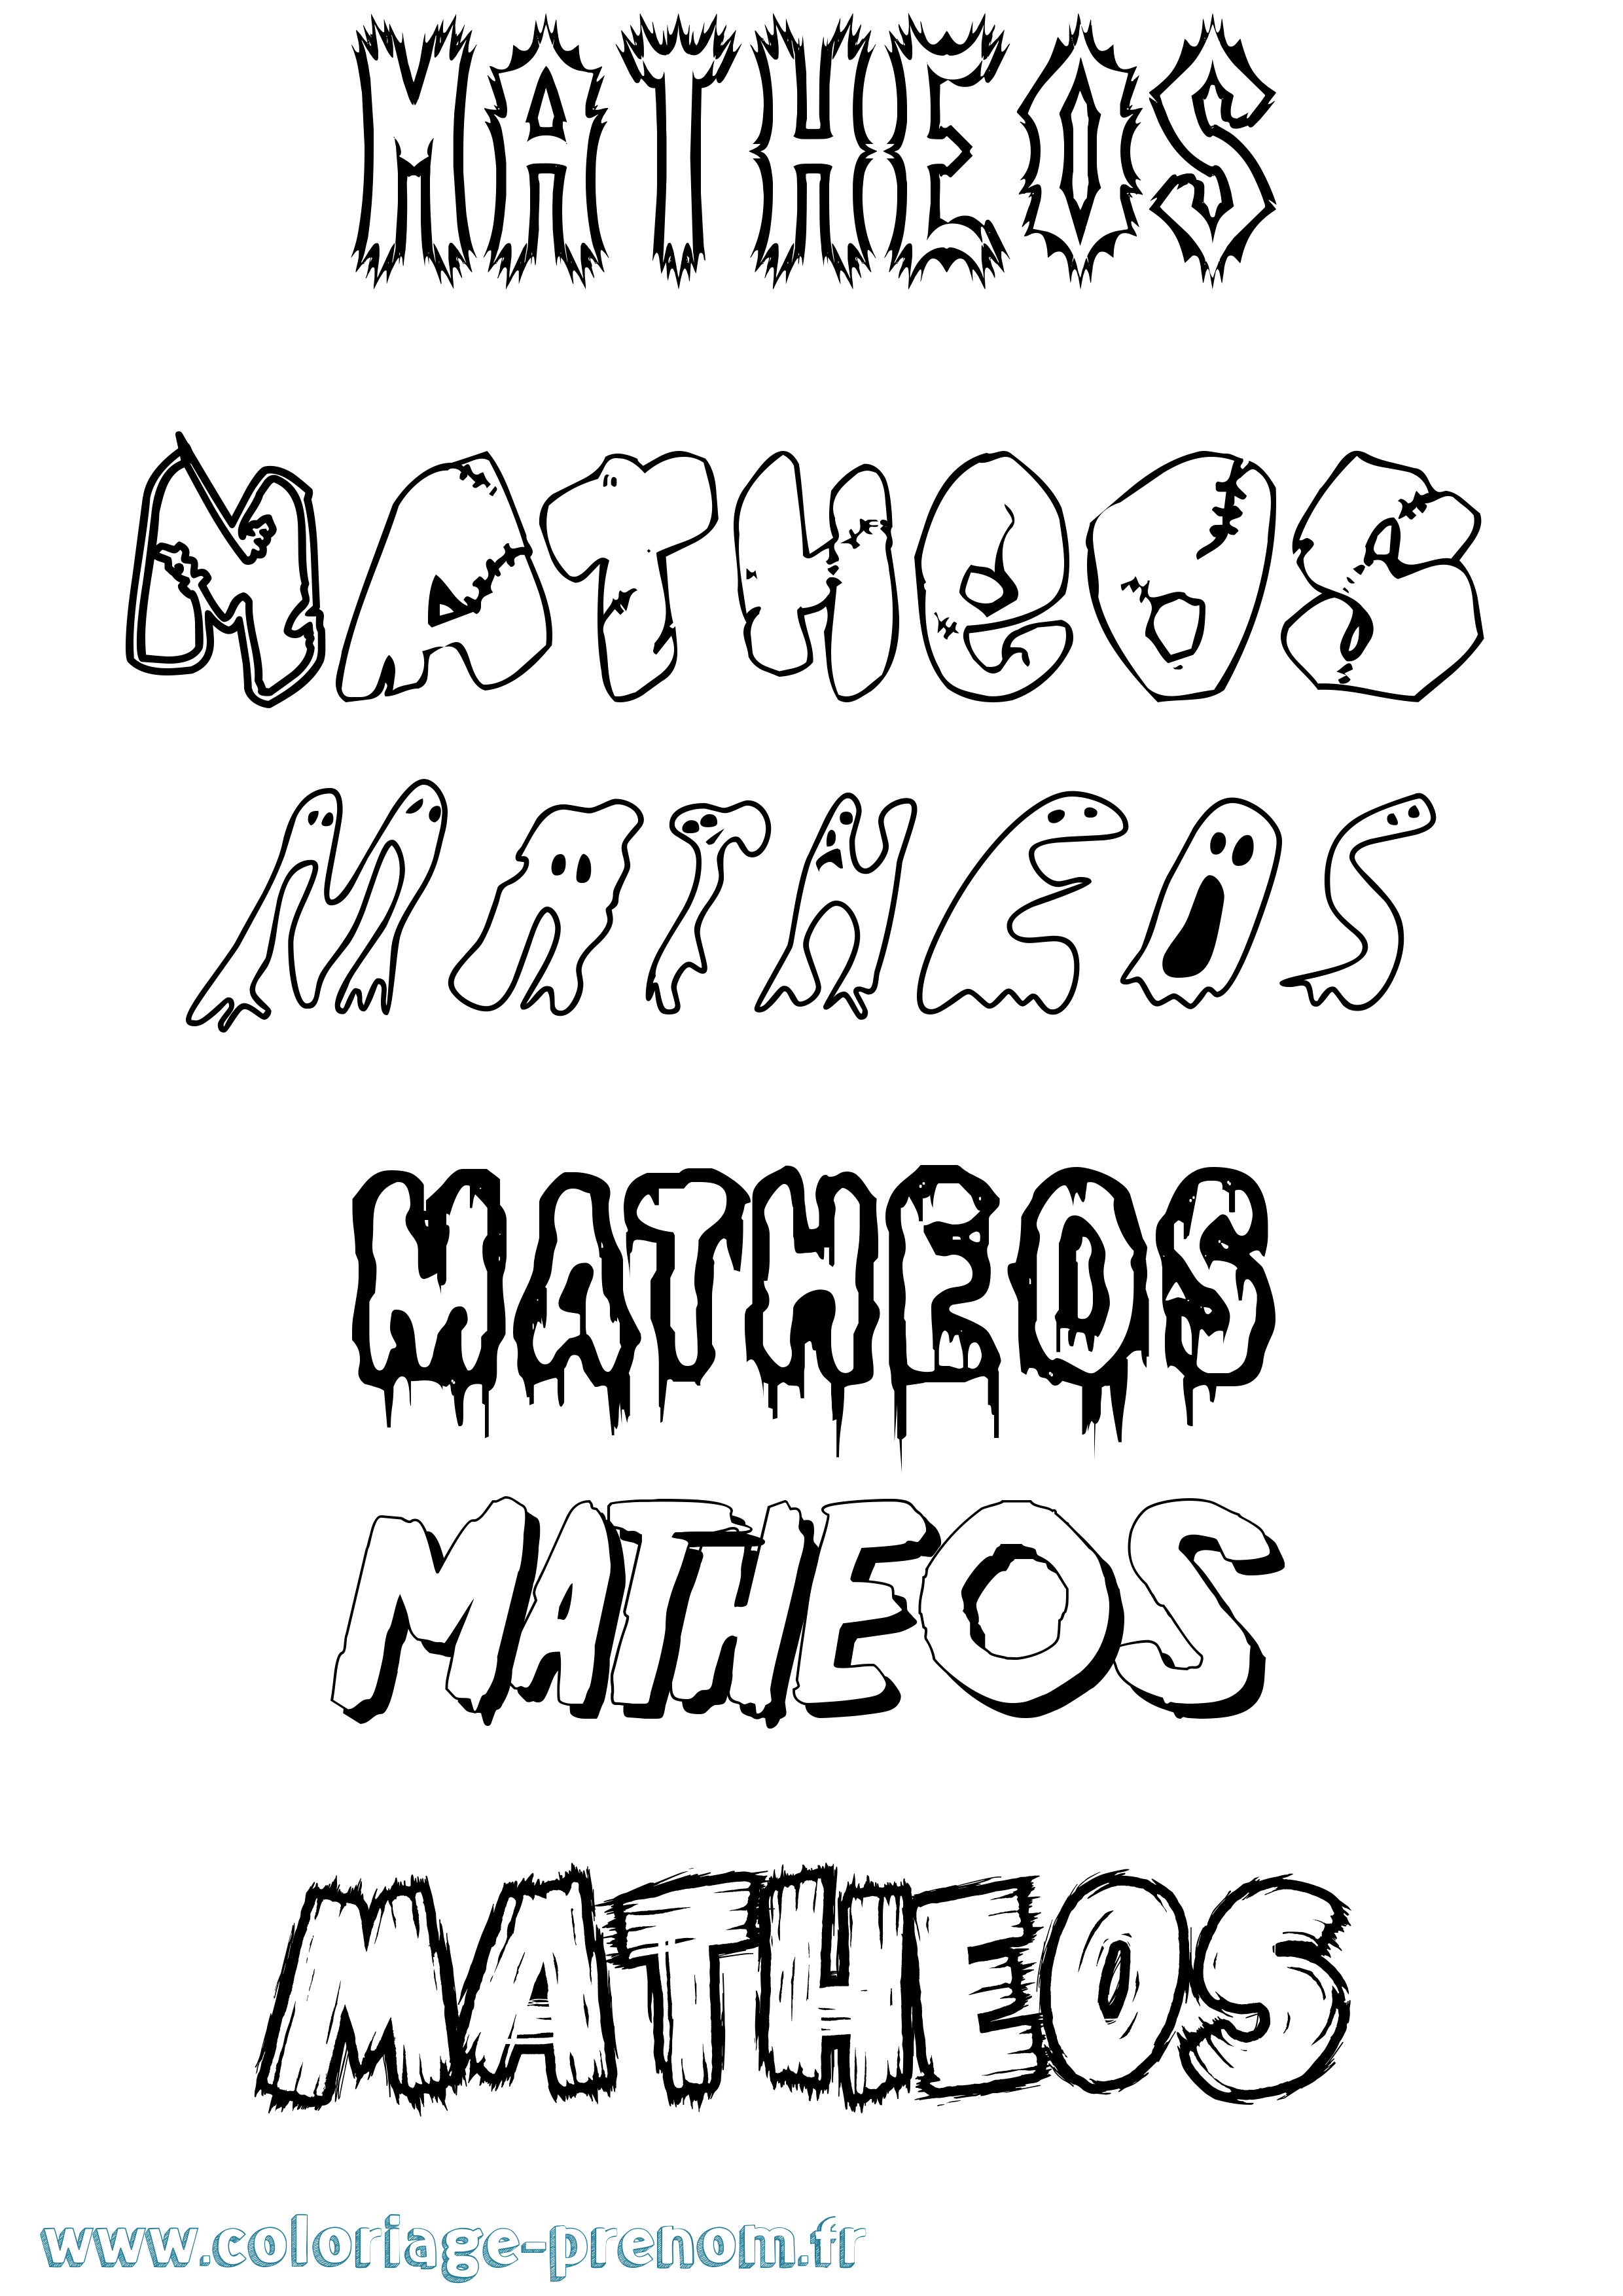 Coloriage prénom Matheos Frisson